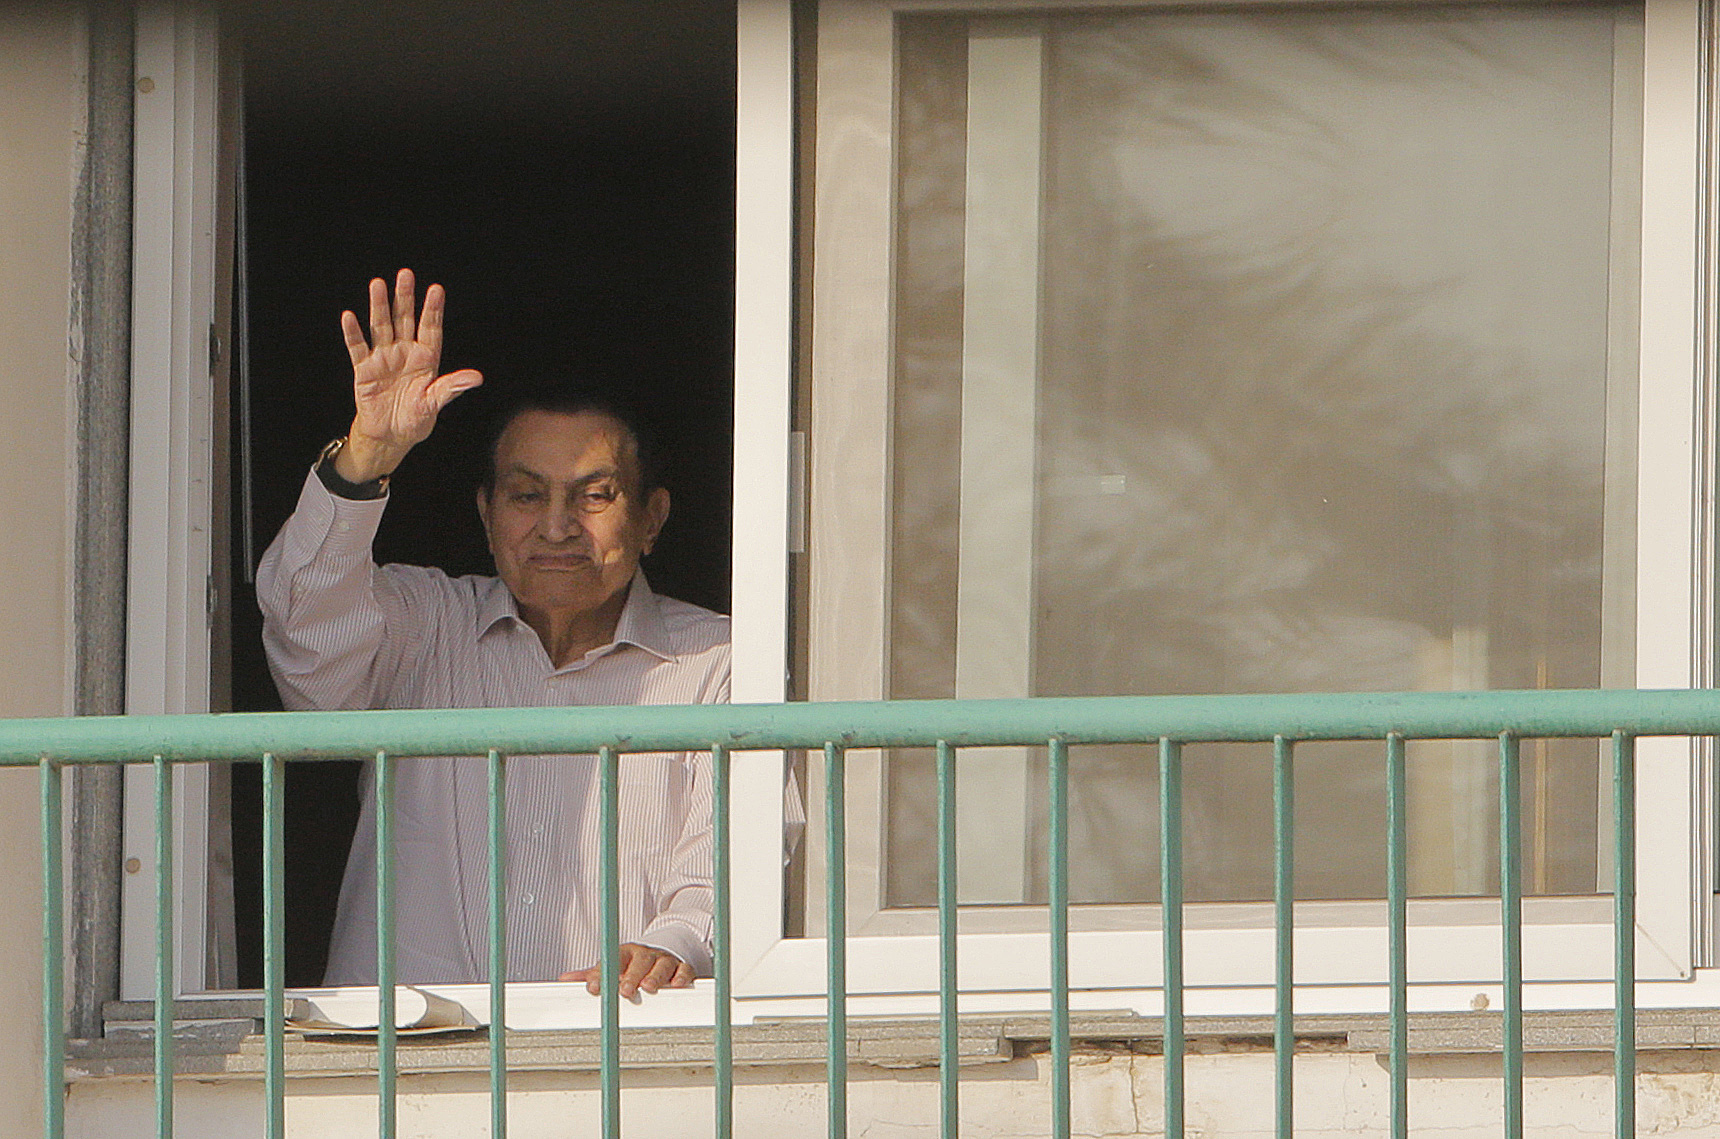 Liberan a Mubarak luego de seis años de la revolución egipcia